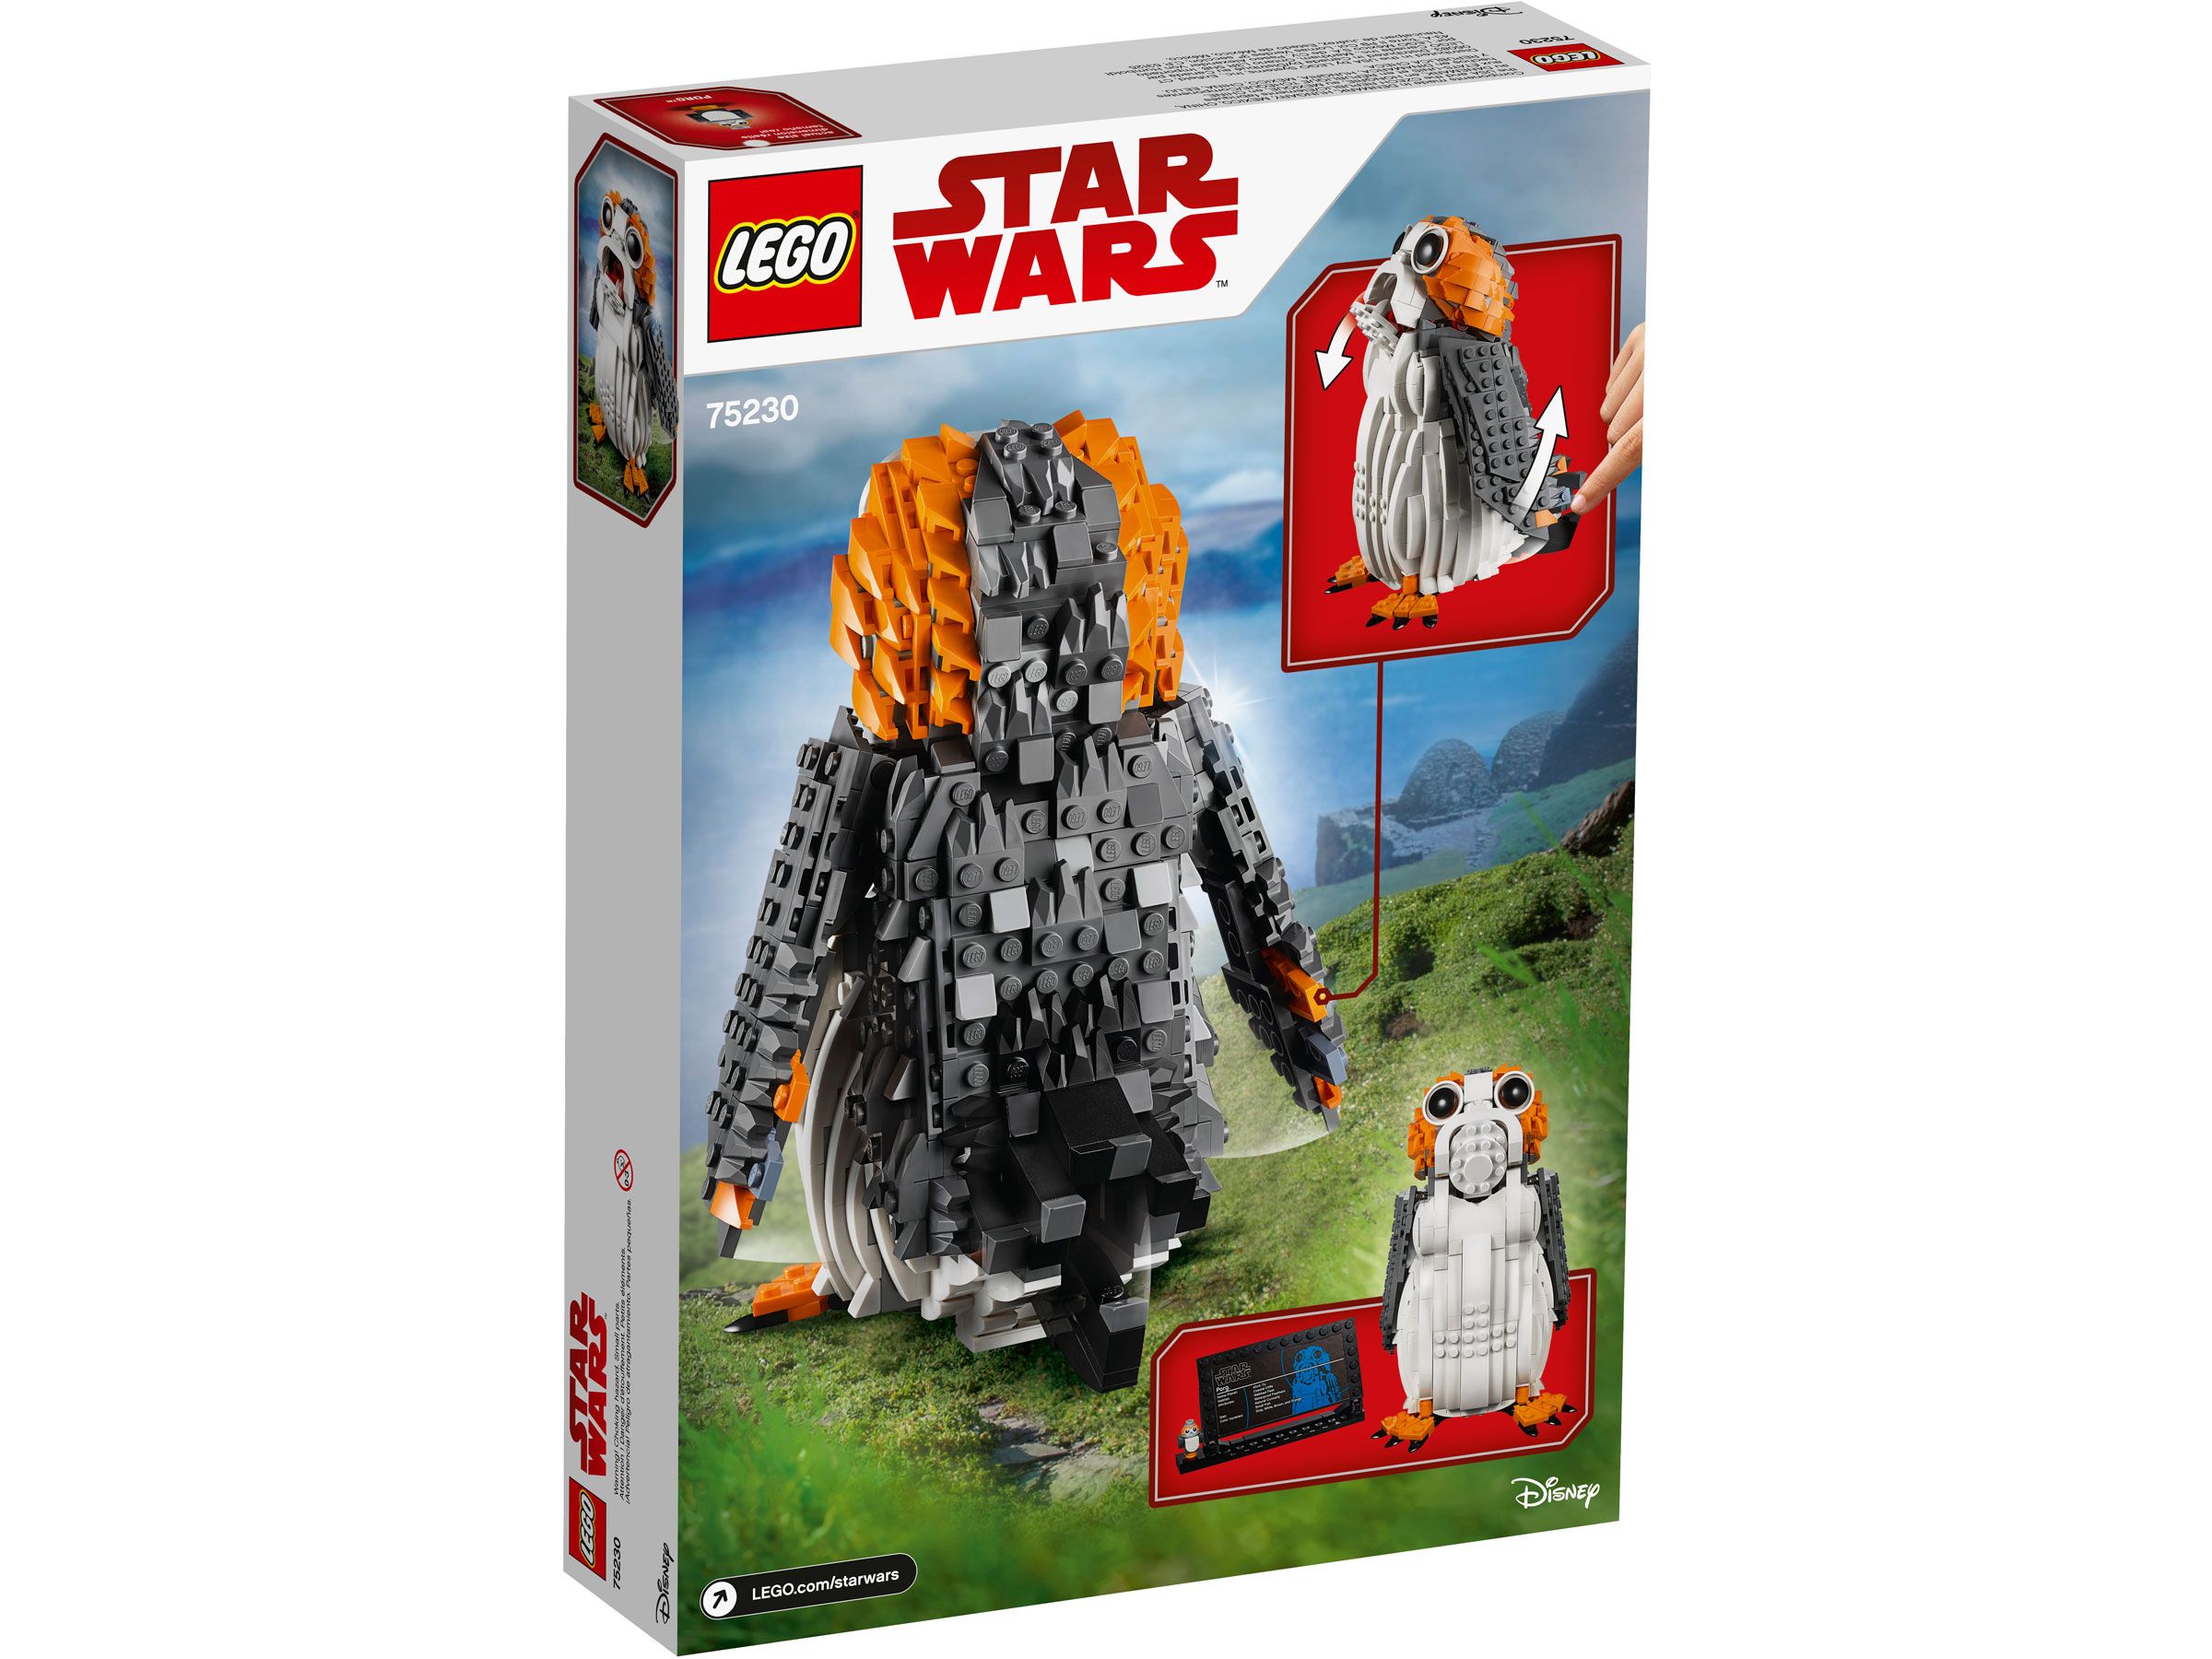 LEGO Star Wars 75230 Porg™ LEGO_75230_Box5_v39.jpg